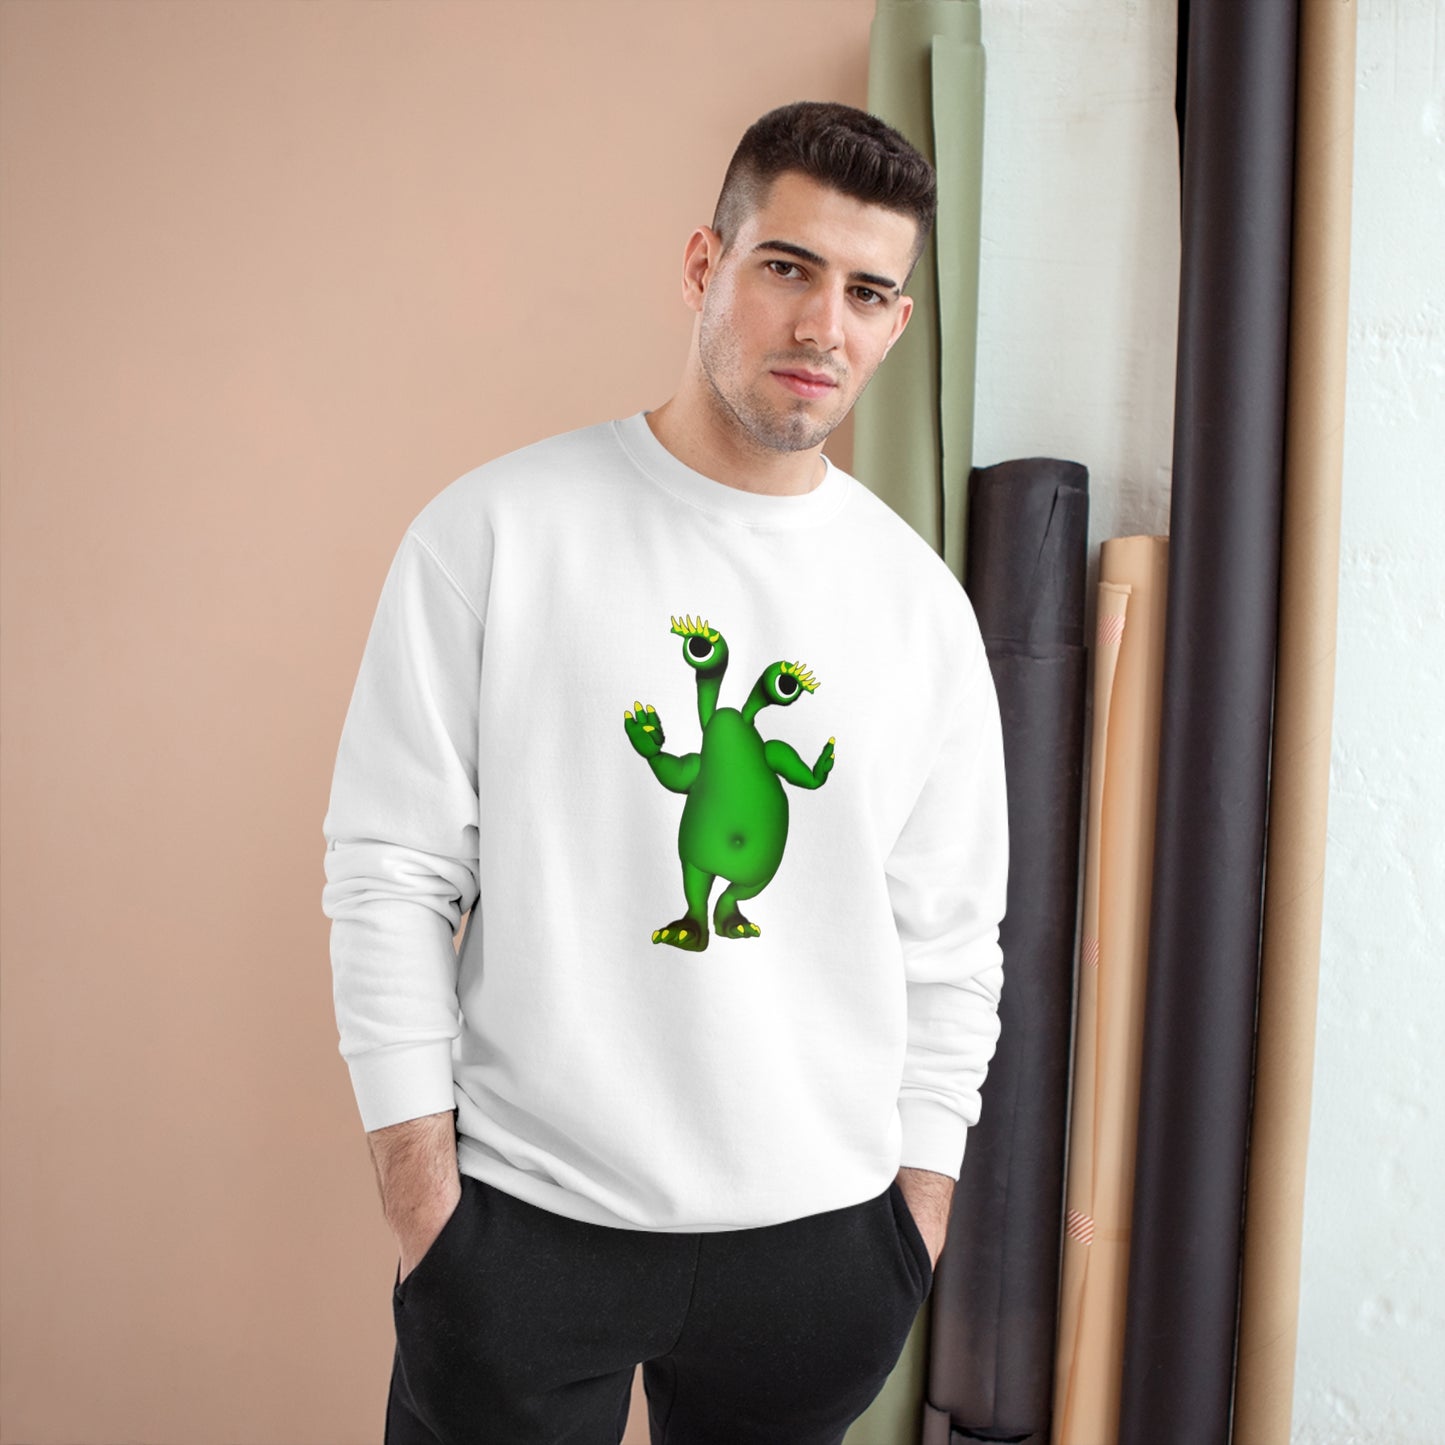 Green Dancing Alien Champion Sweatshirt